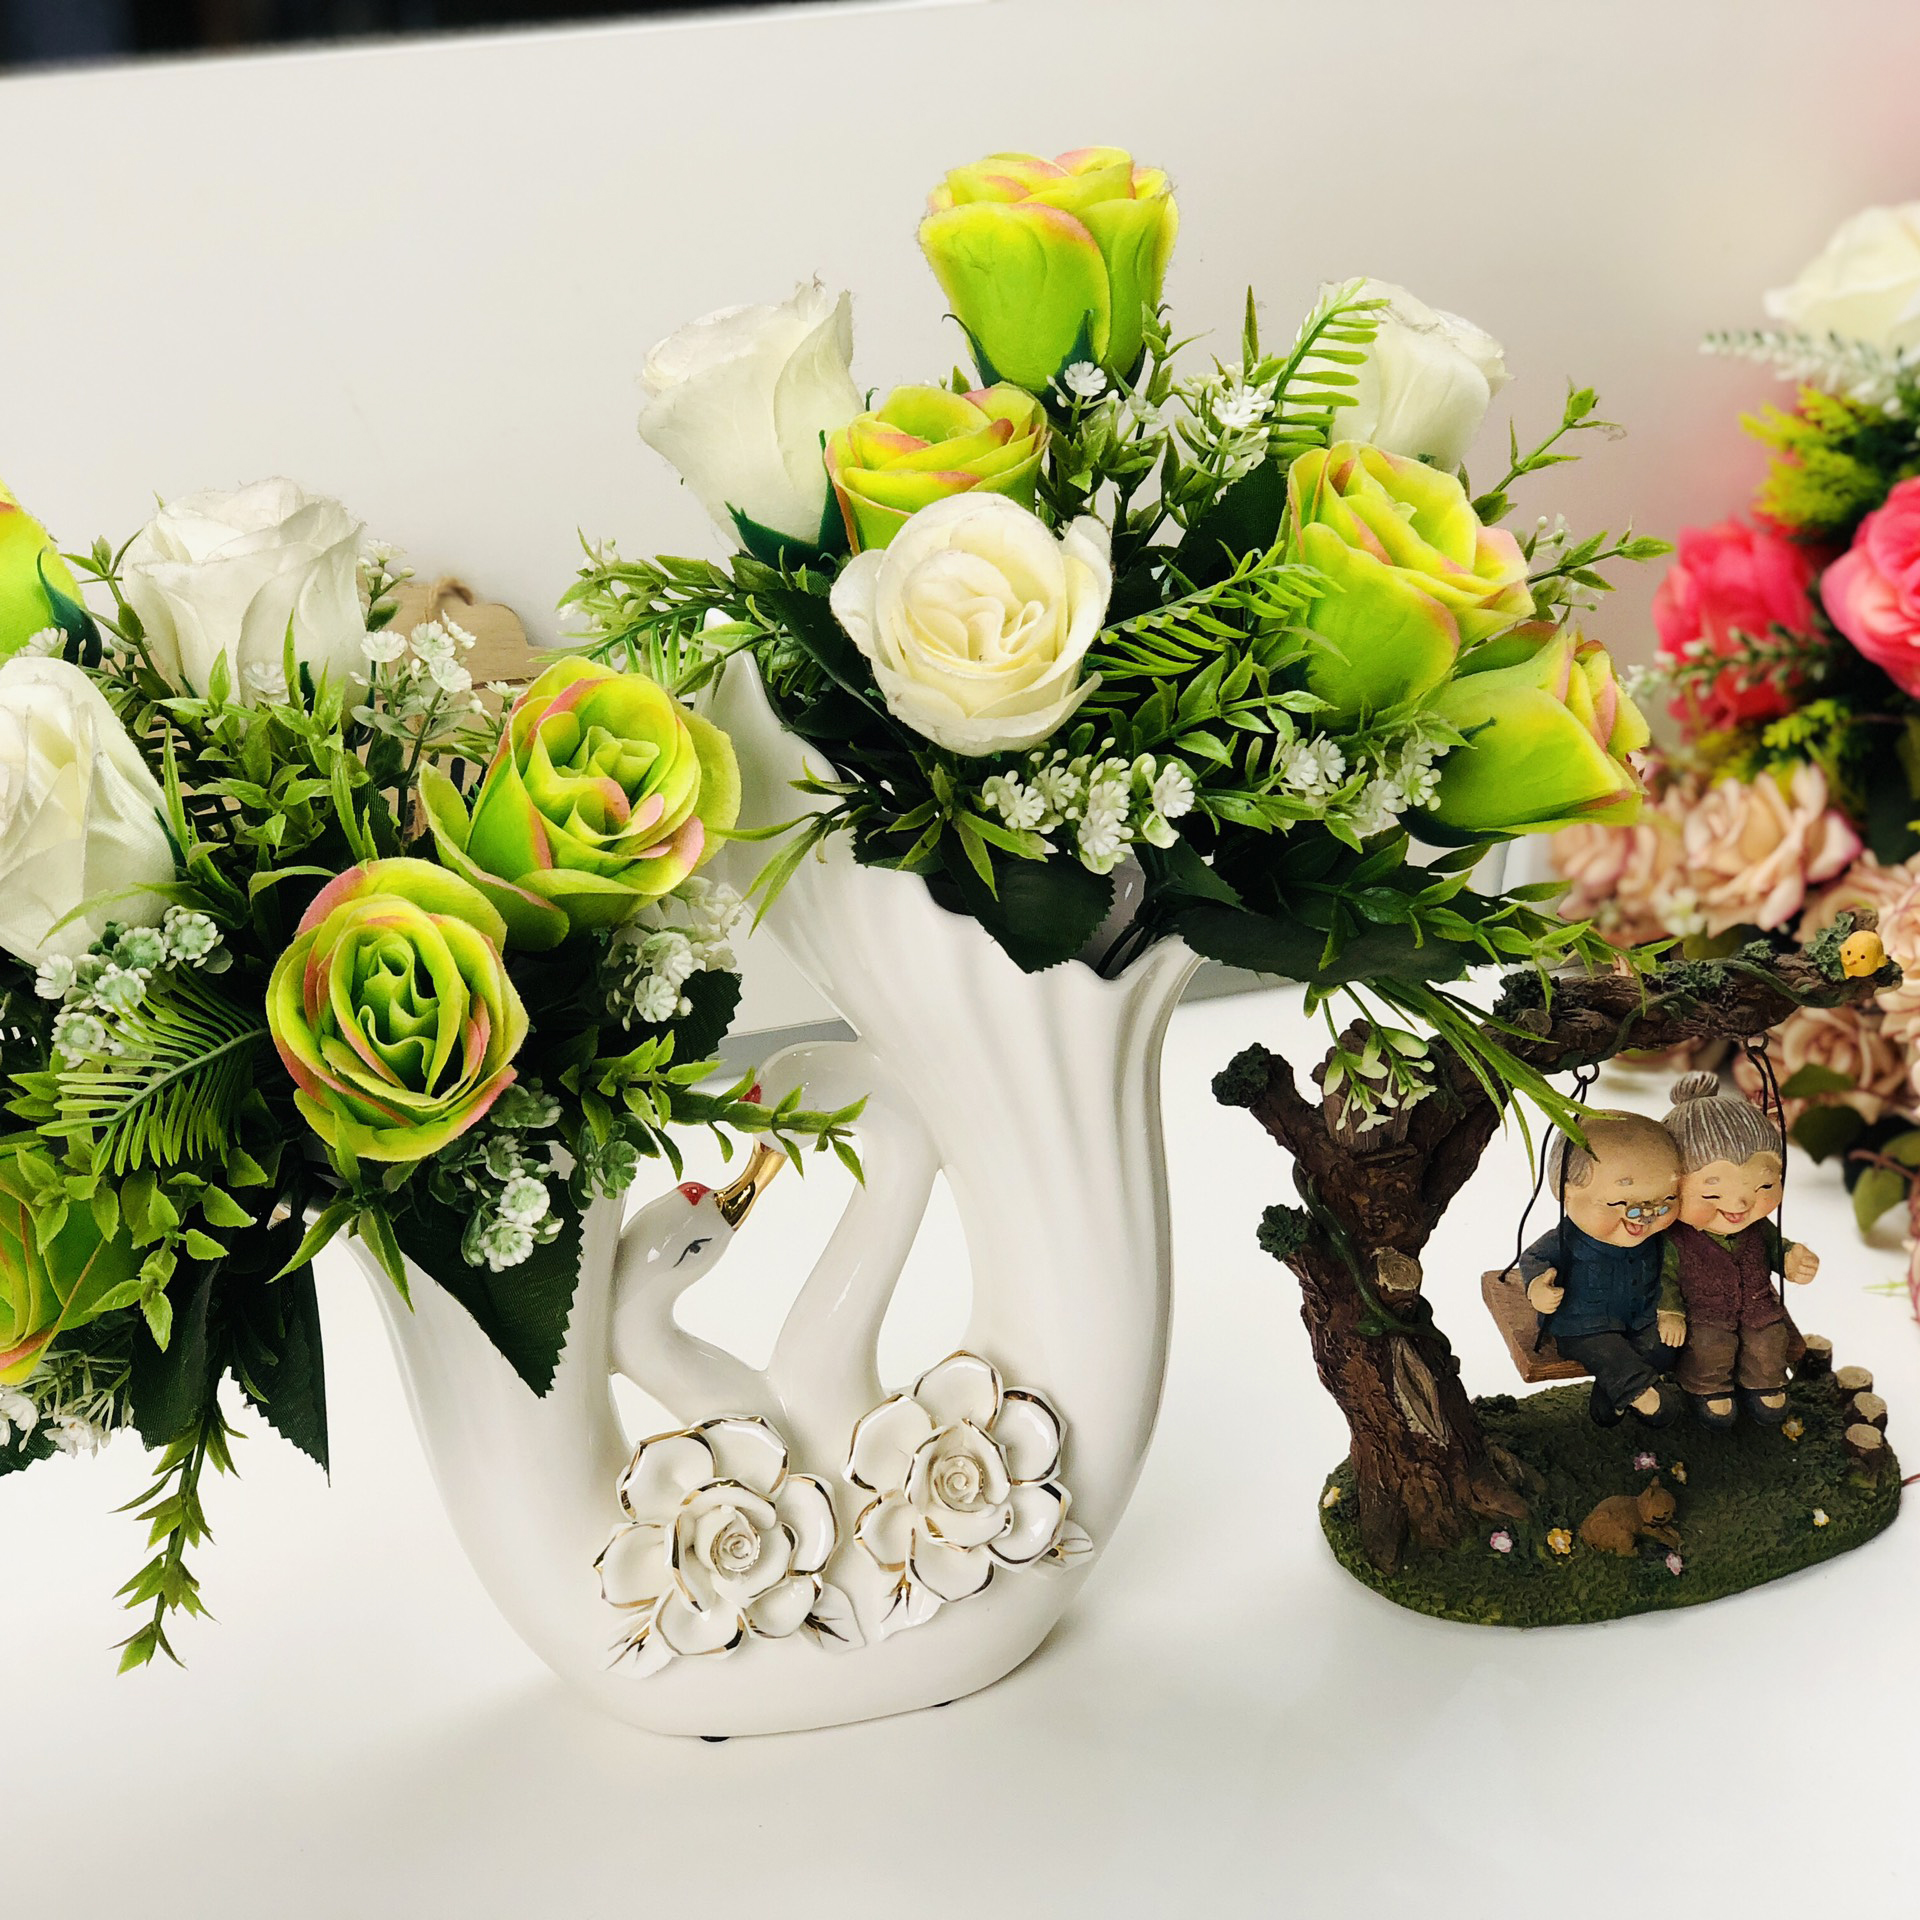 Bình hoa decor họa tiết hoa hồng nổi viền vàng 24k - Bình cắm hoa decor trang trí đẹp cho phòng khách.